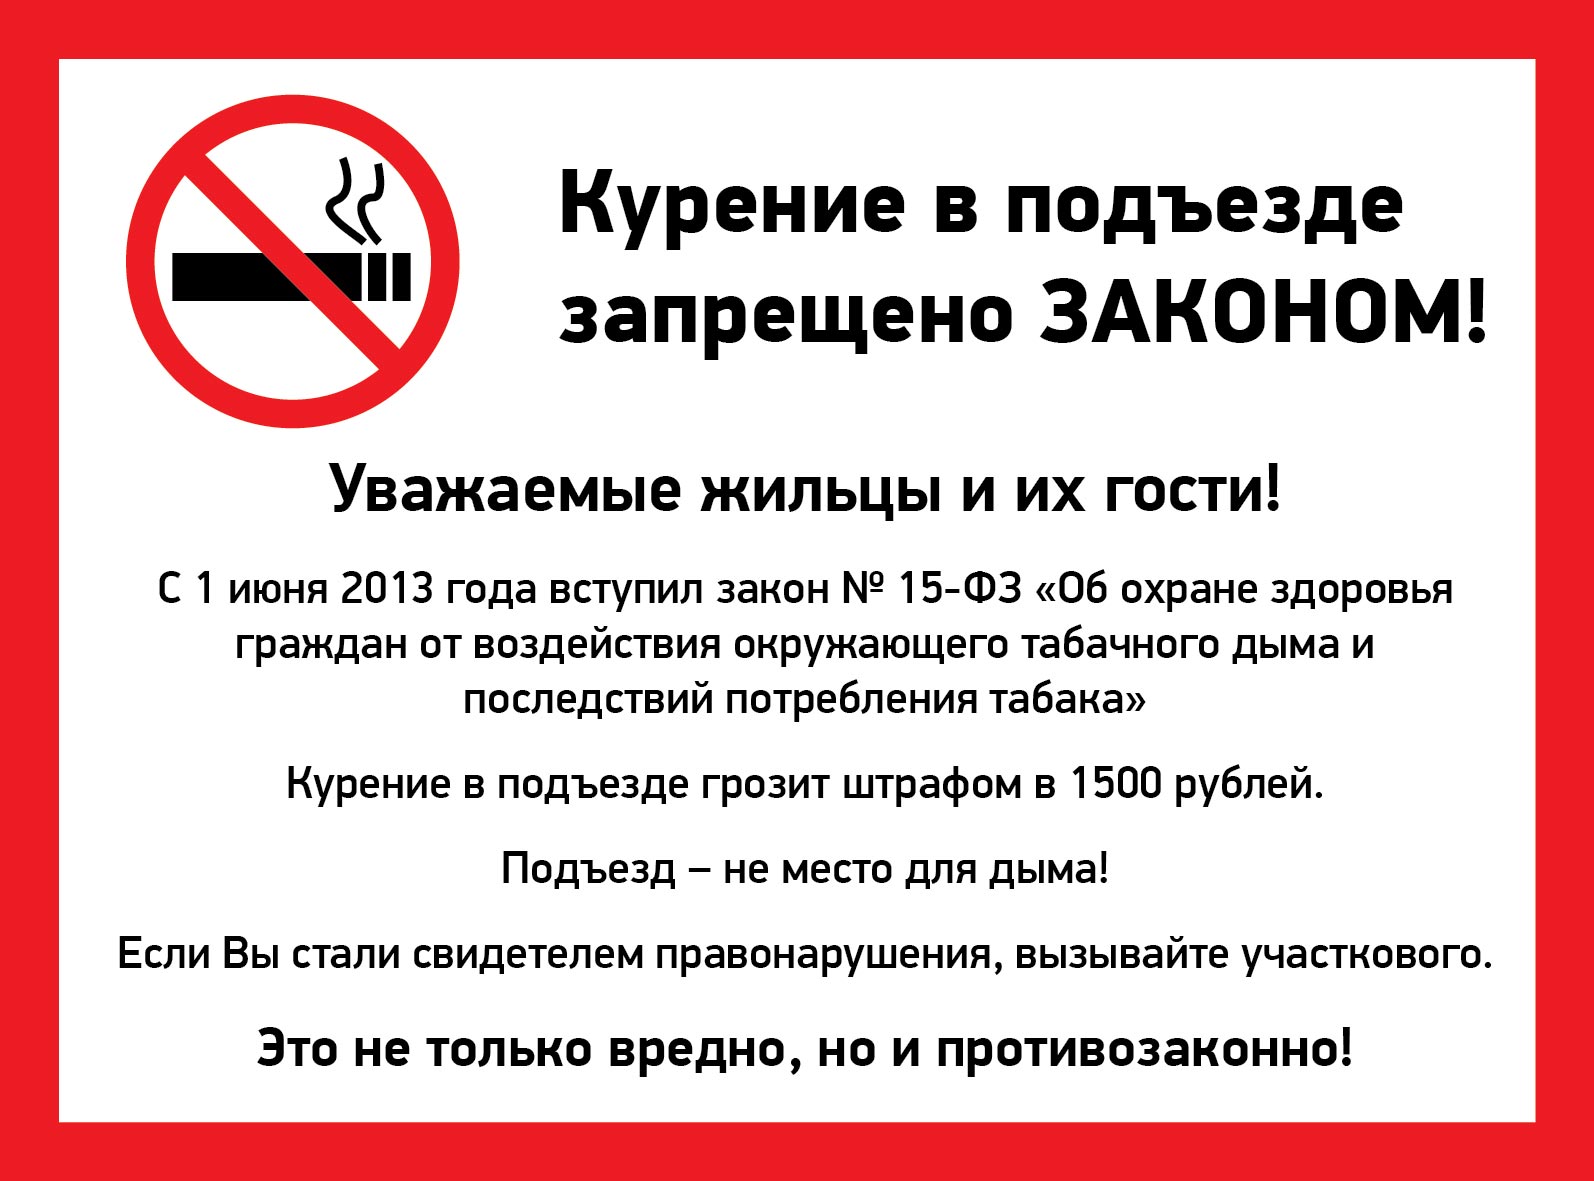 Общие балконы можно курить. Закон о запрете курения в подъездах многоквартирных домов. О запрете курения в подъездах МКД. Закон запрещающий курение в подъездах жилых домов. Таблица о запрете курения в подъездах жилых домов.